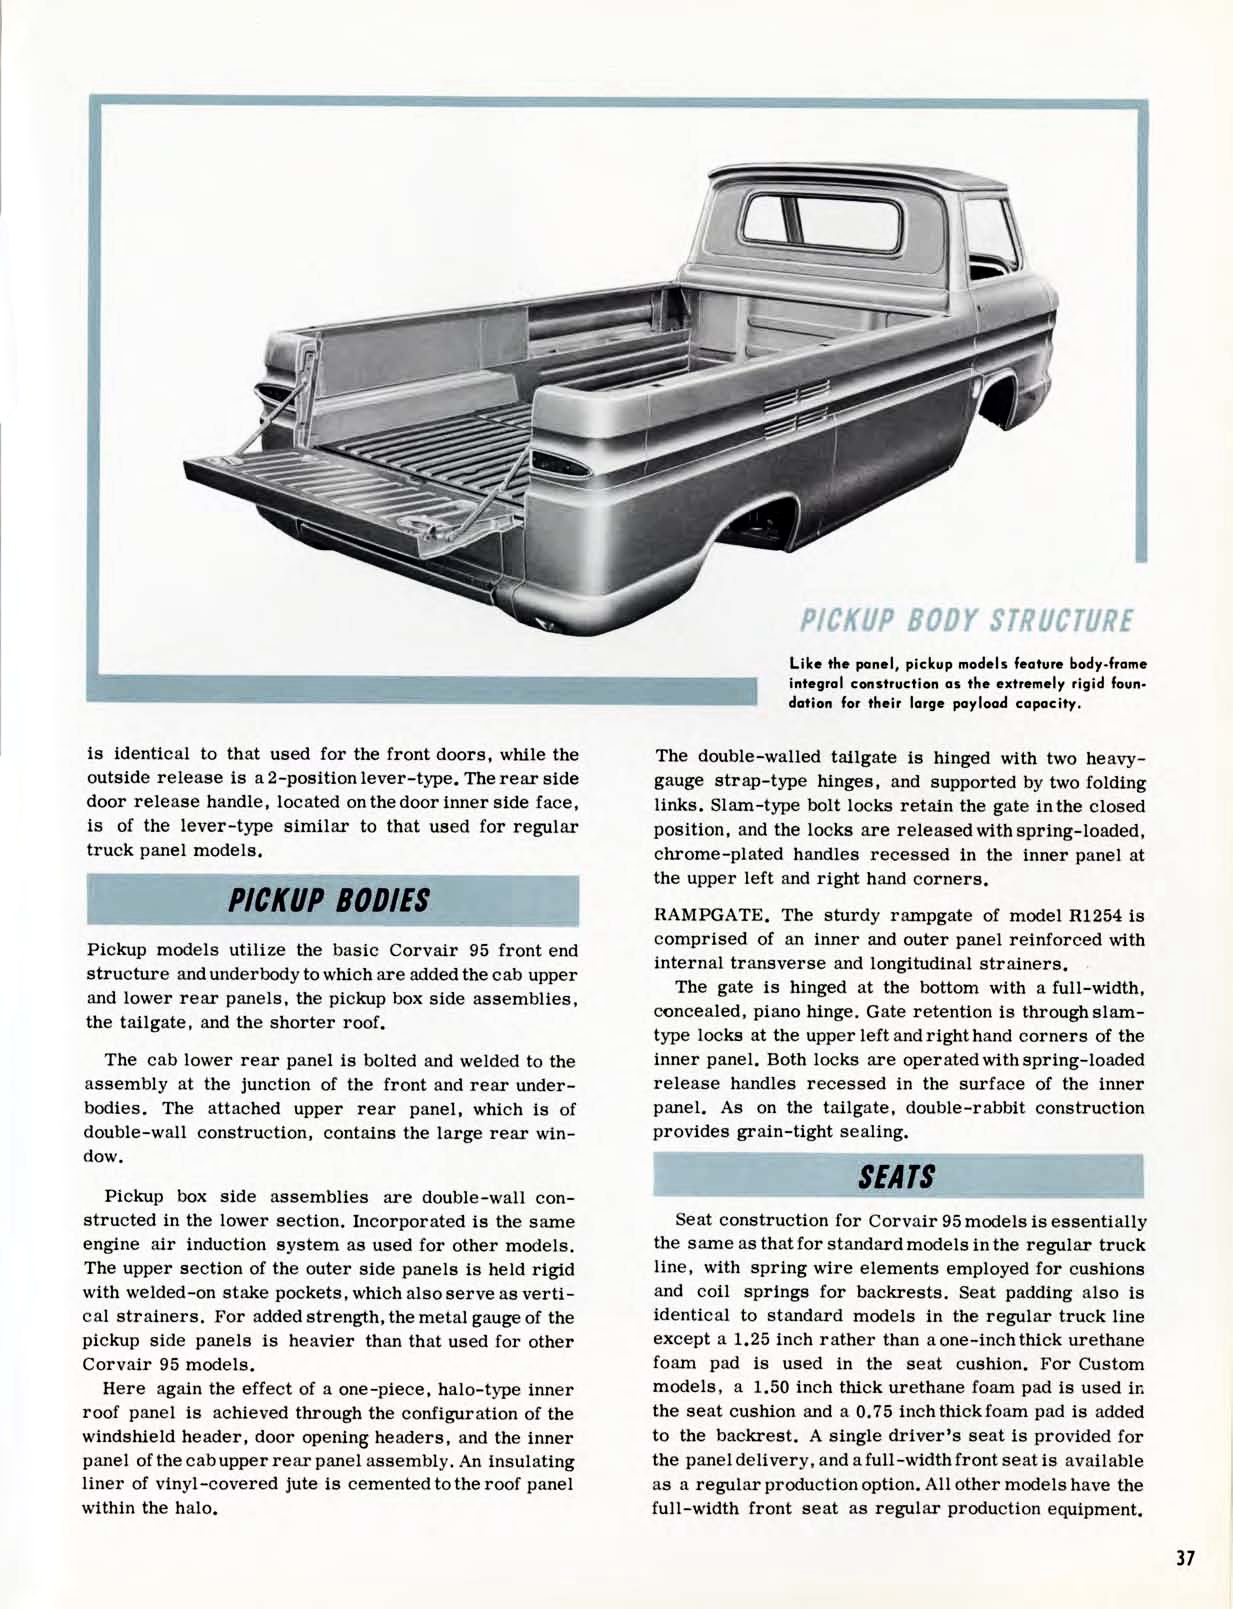 1961 Chevrolet Truck Engineering Features-37